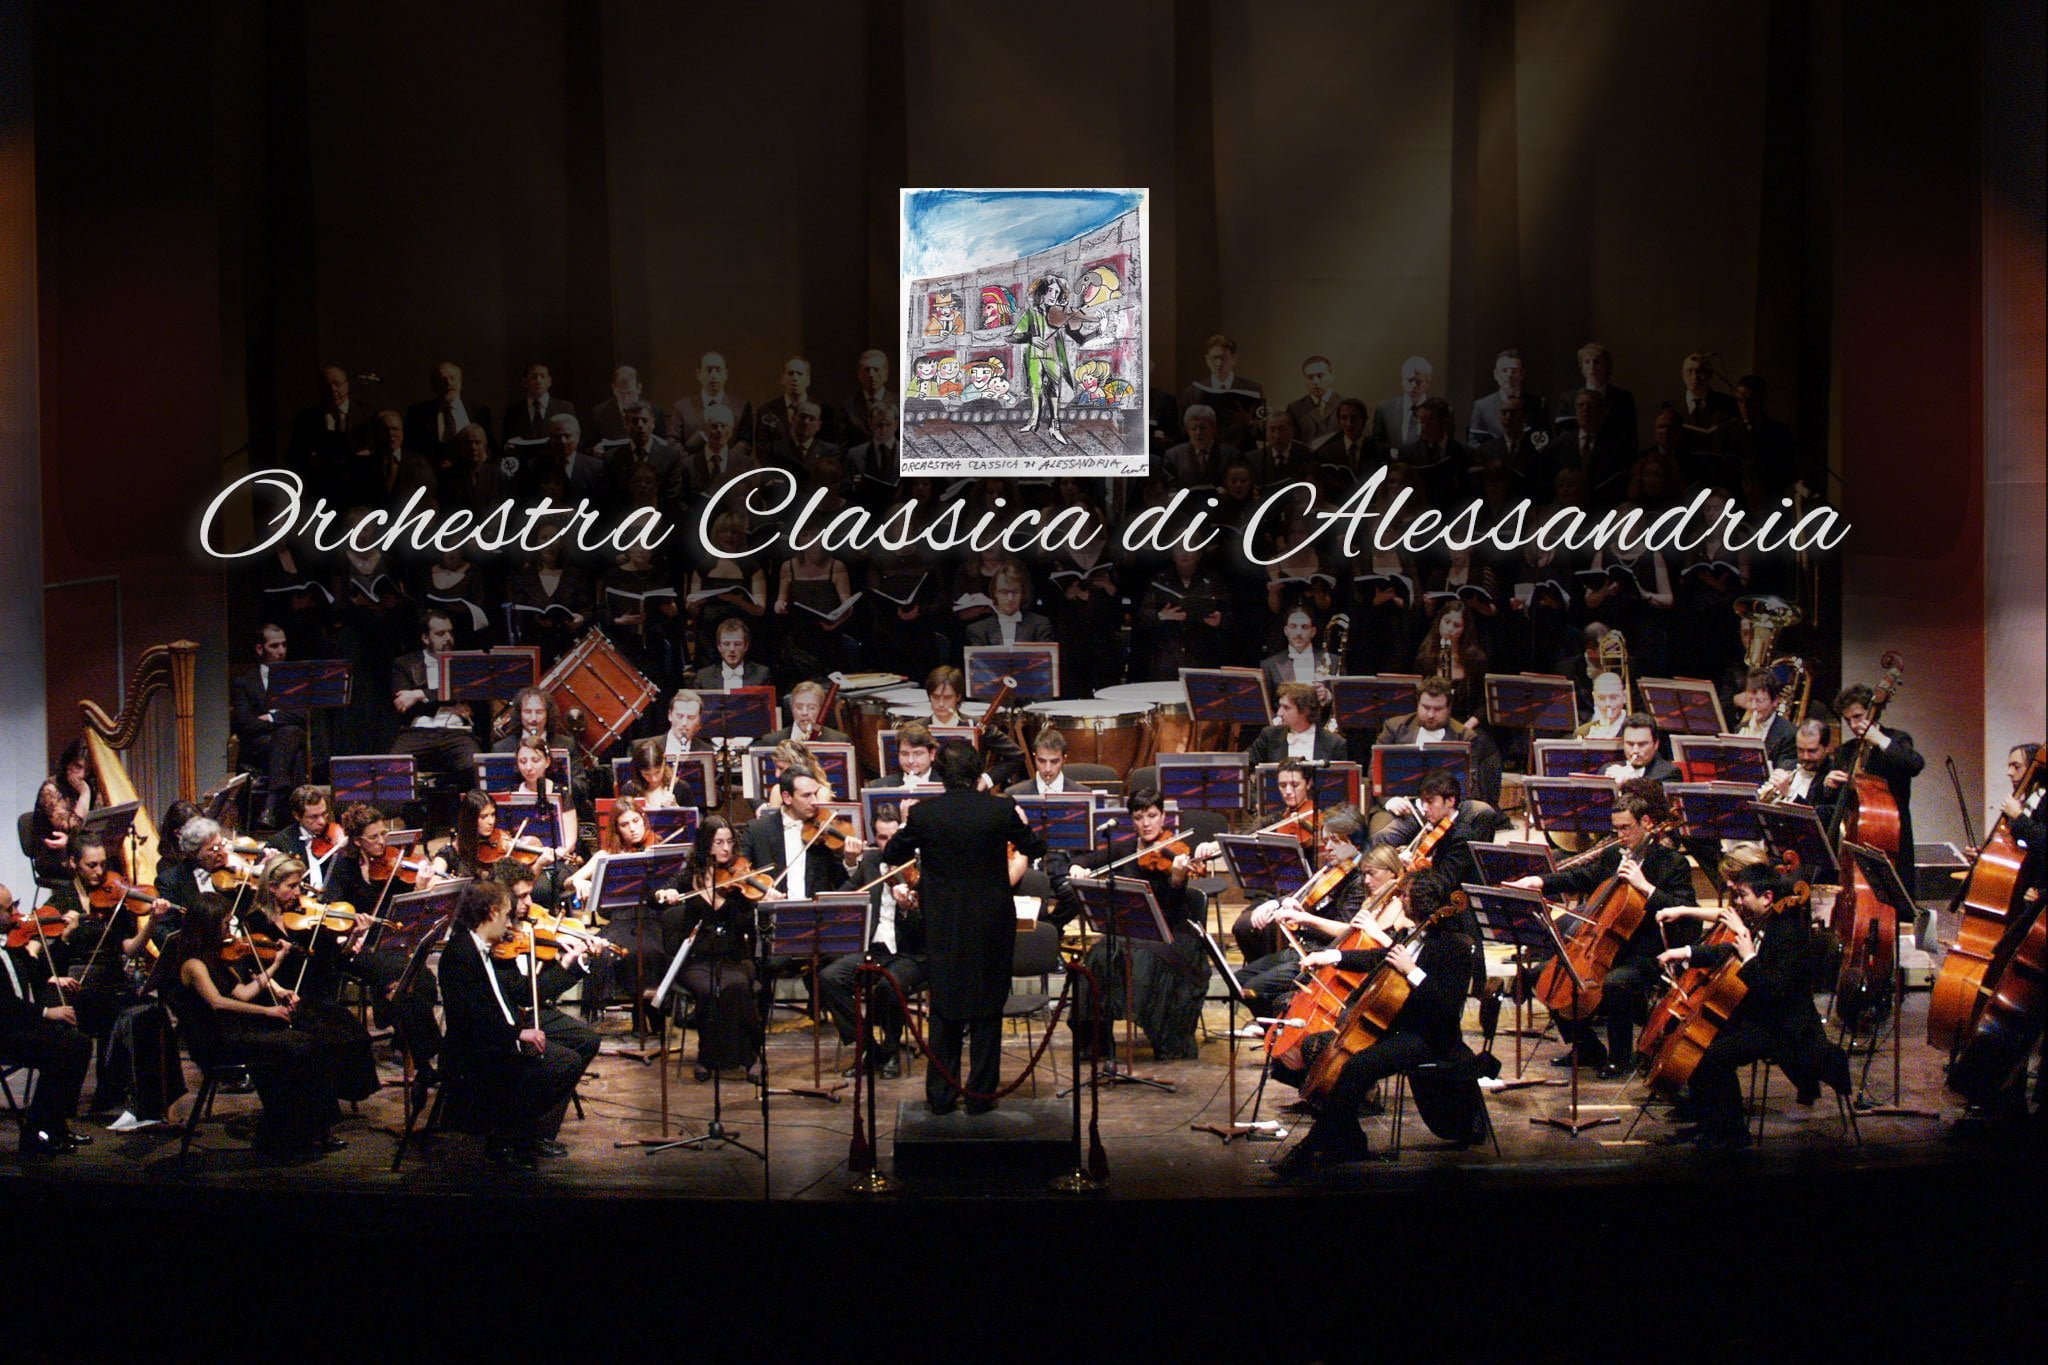 Orchestra Classica modern open trio